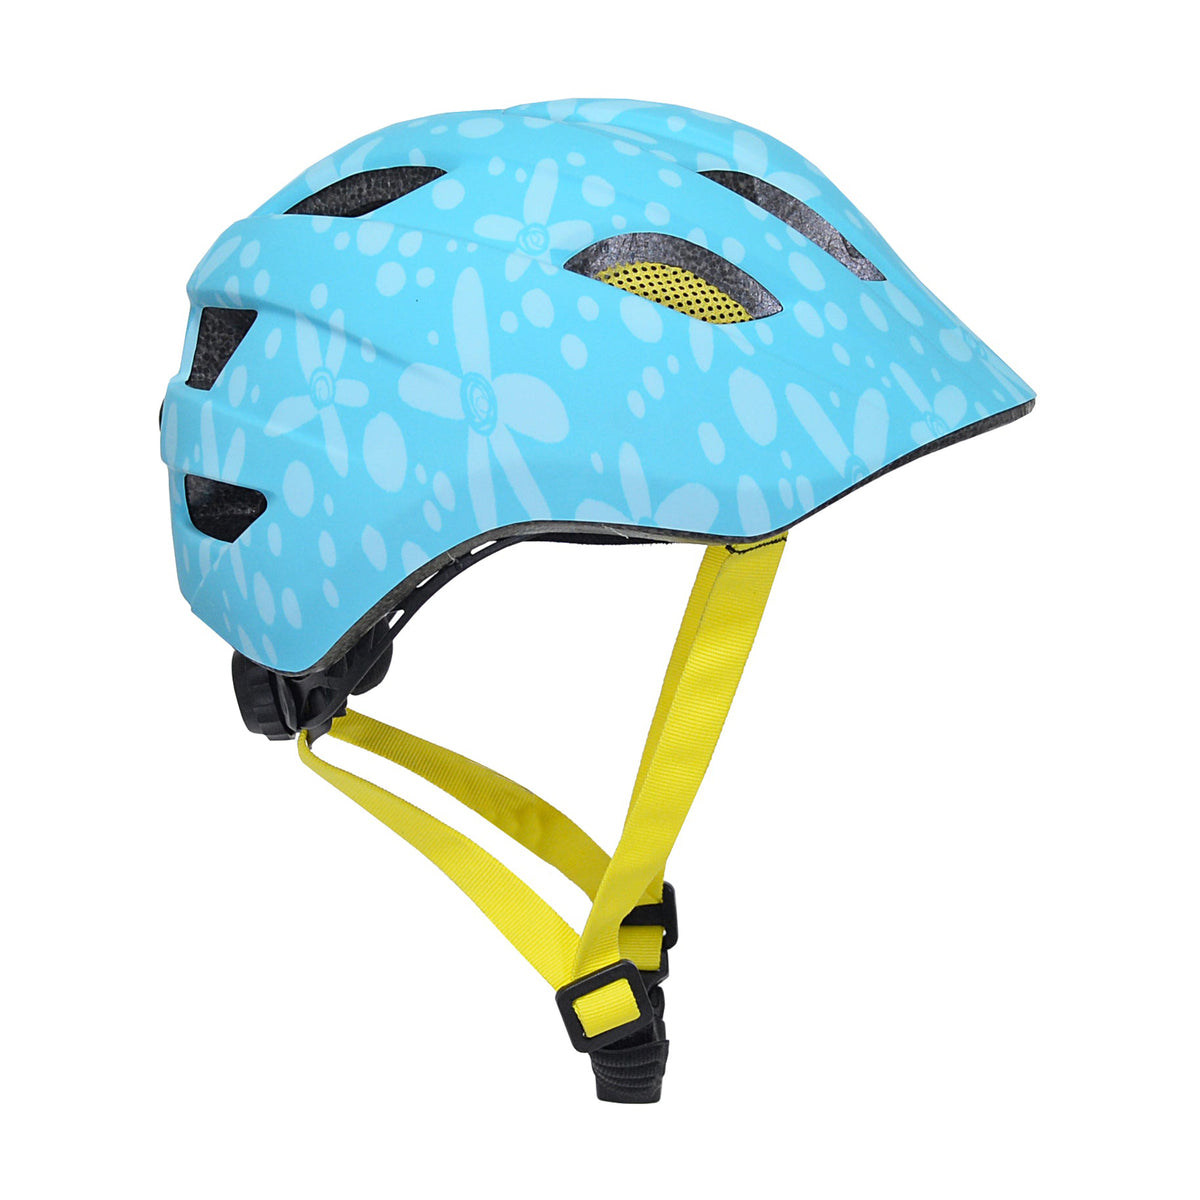 Kent Flower Toddler Multi-Sport Helmet | Helmet for Kids Ages 1-3